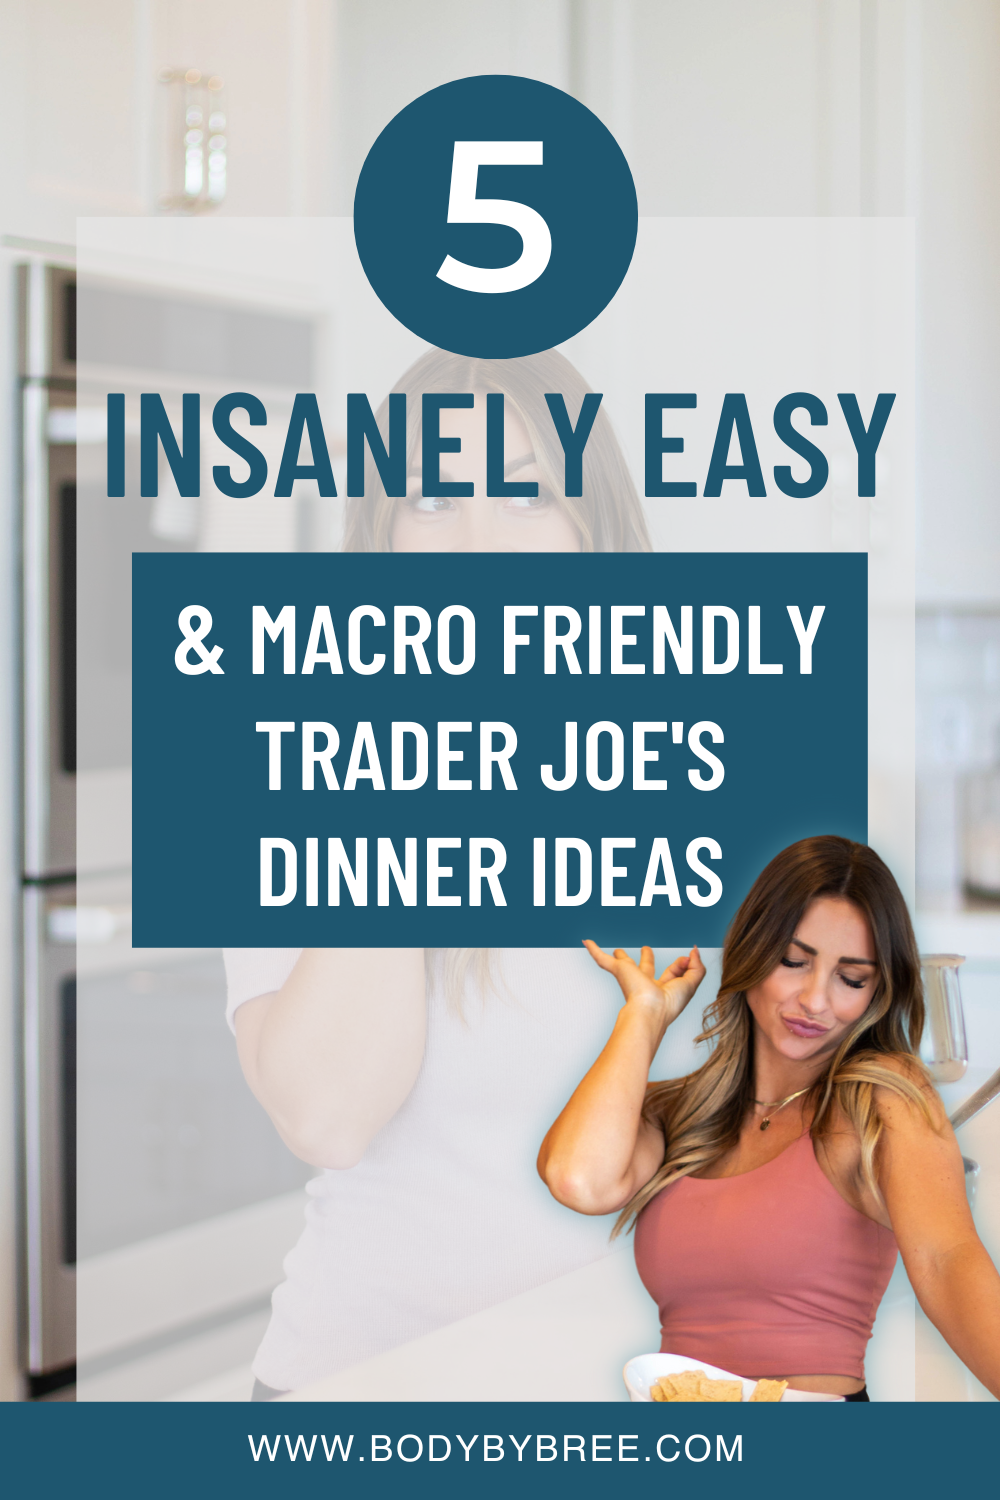 5 INSANELY EASY MACRO FRIENDLY TRADER JOE'S DINNER IDEAS